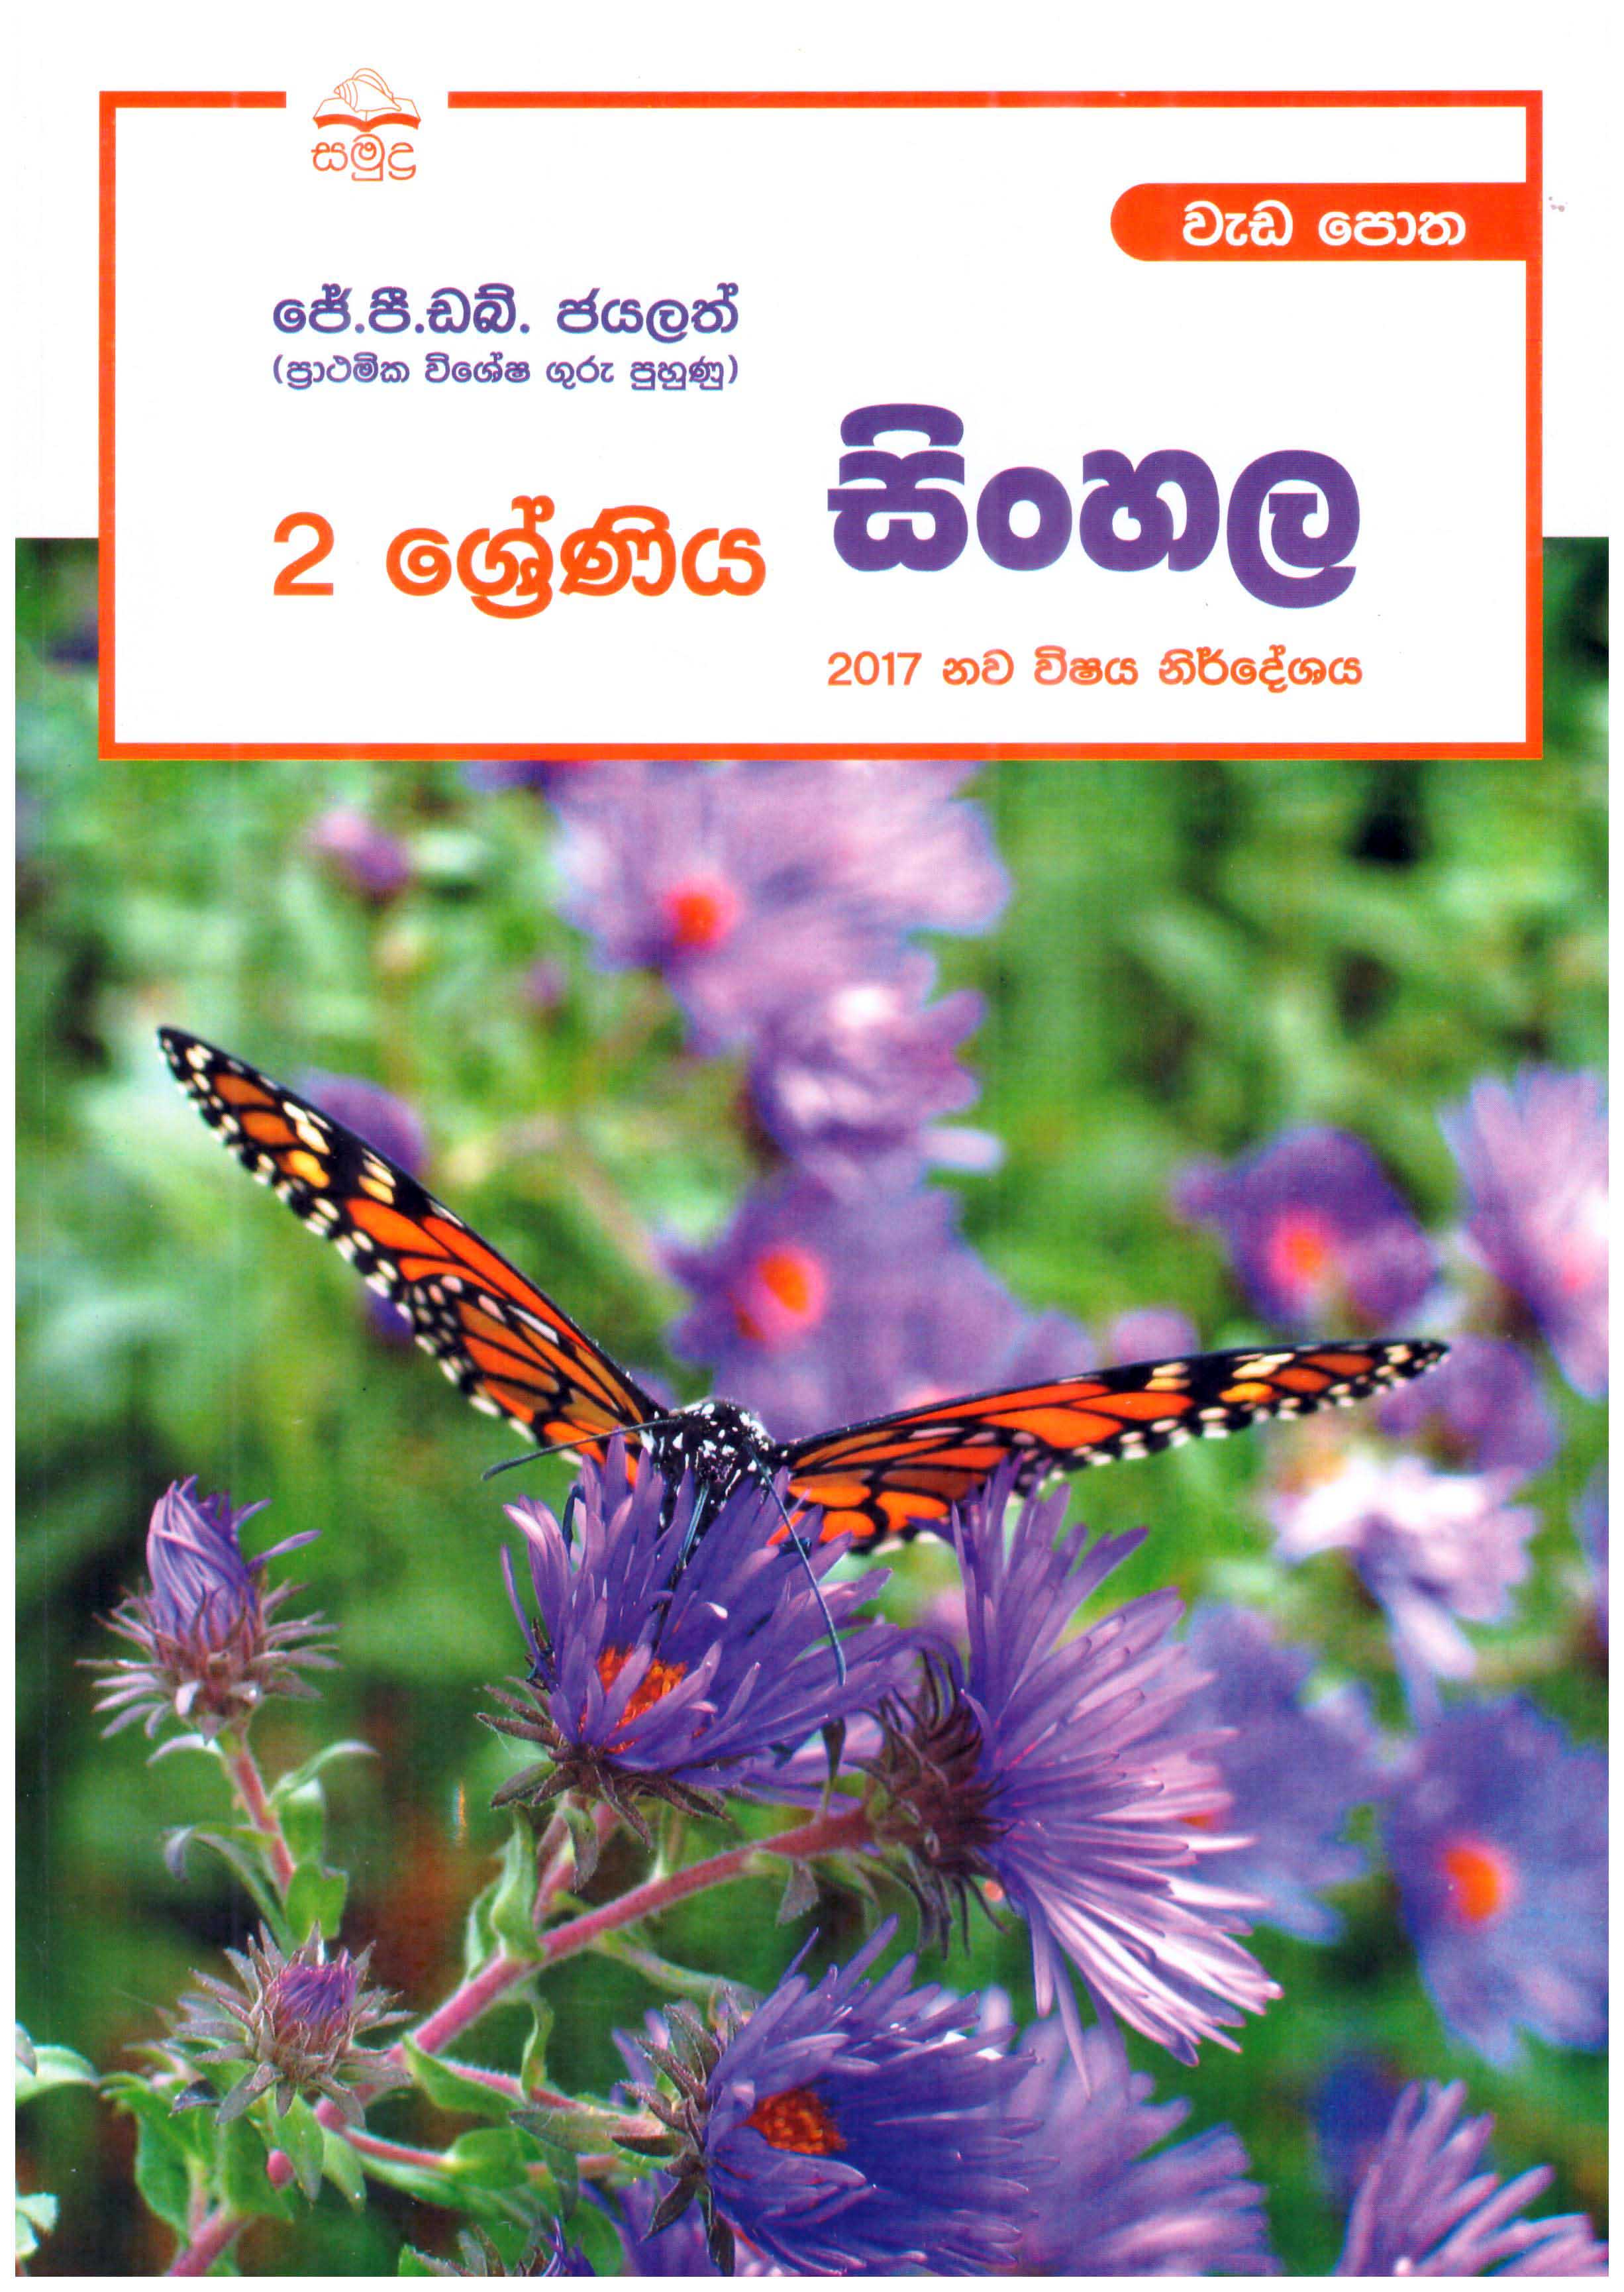 Samudra 2 Shreniya Sinhala Wadapotha (2017 Nawa Vishaya Nirdheshaya)